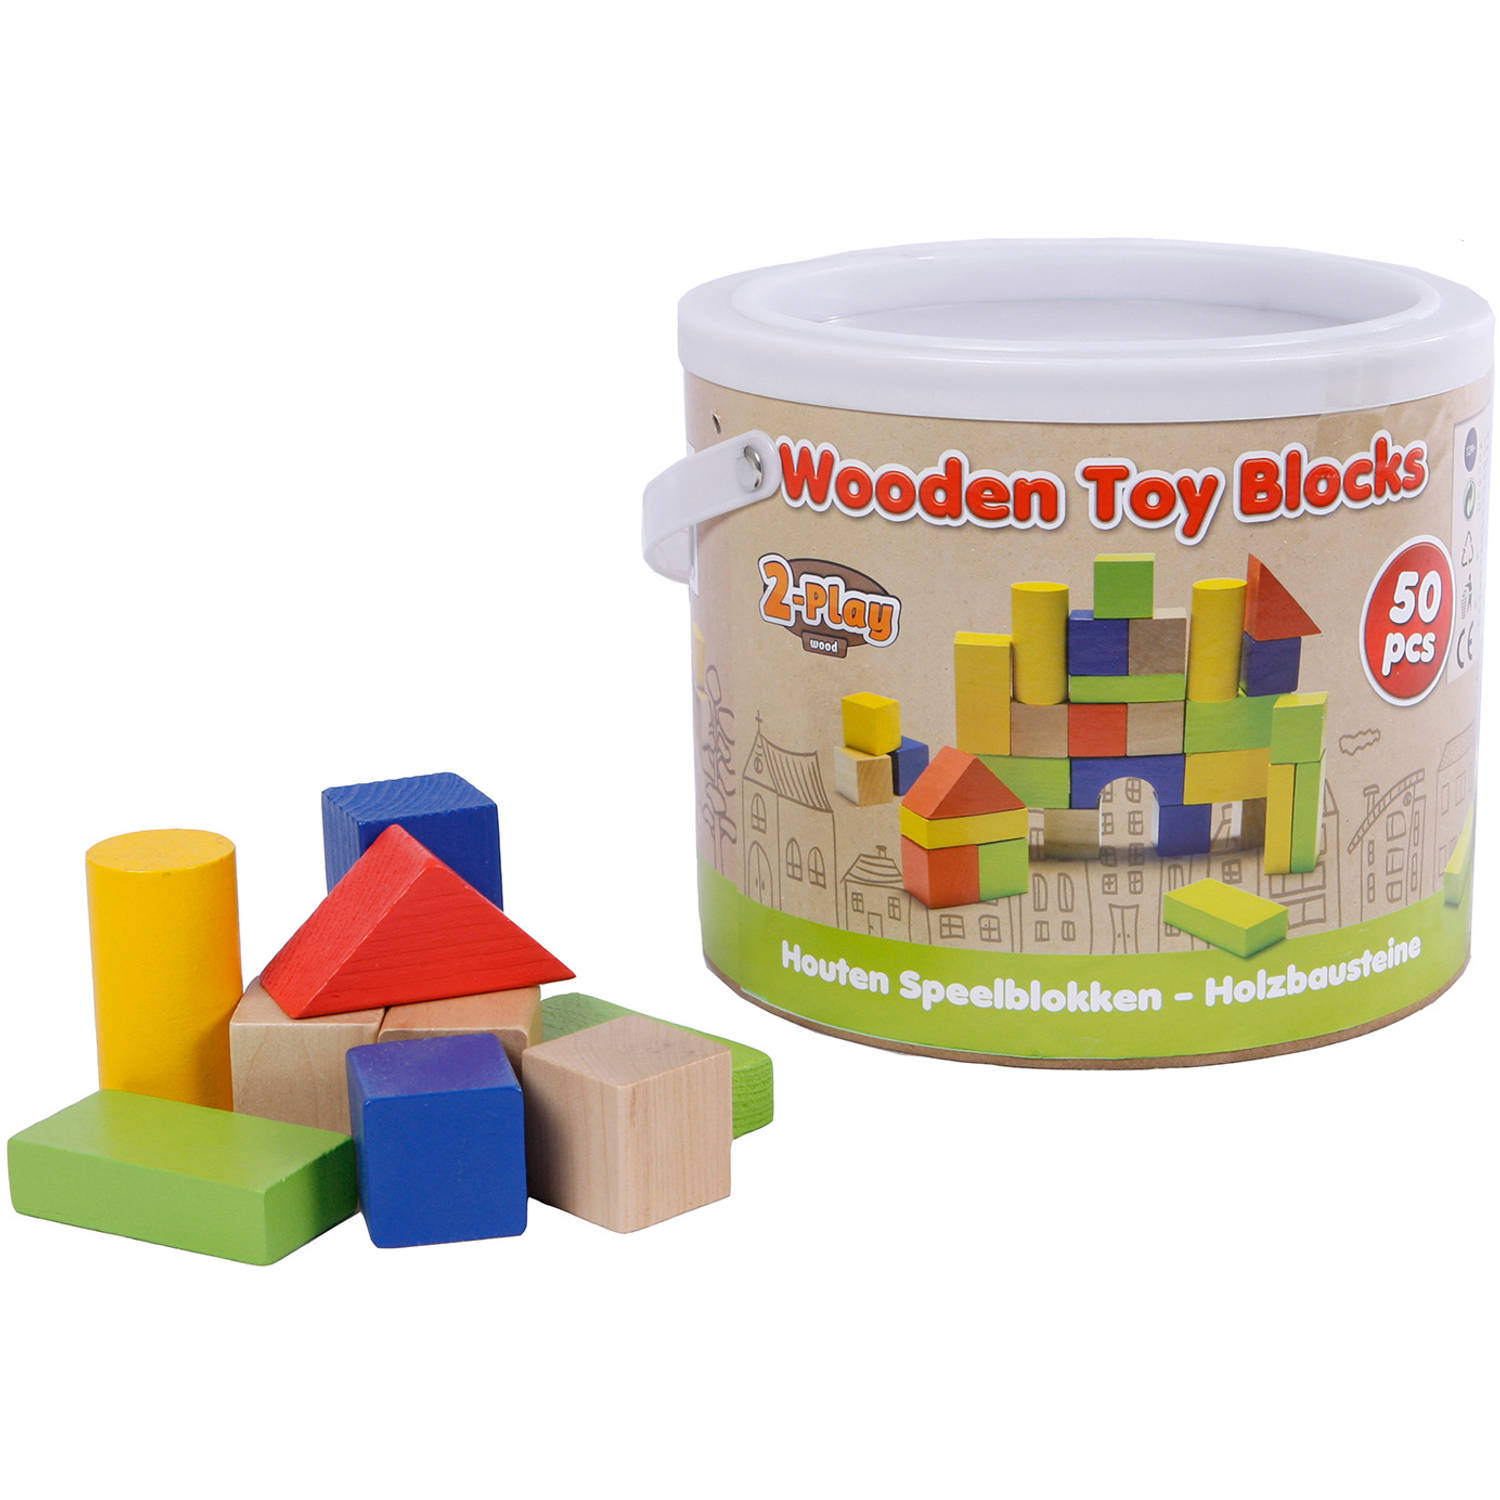 2-Play houten speel blokken 50 stuks